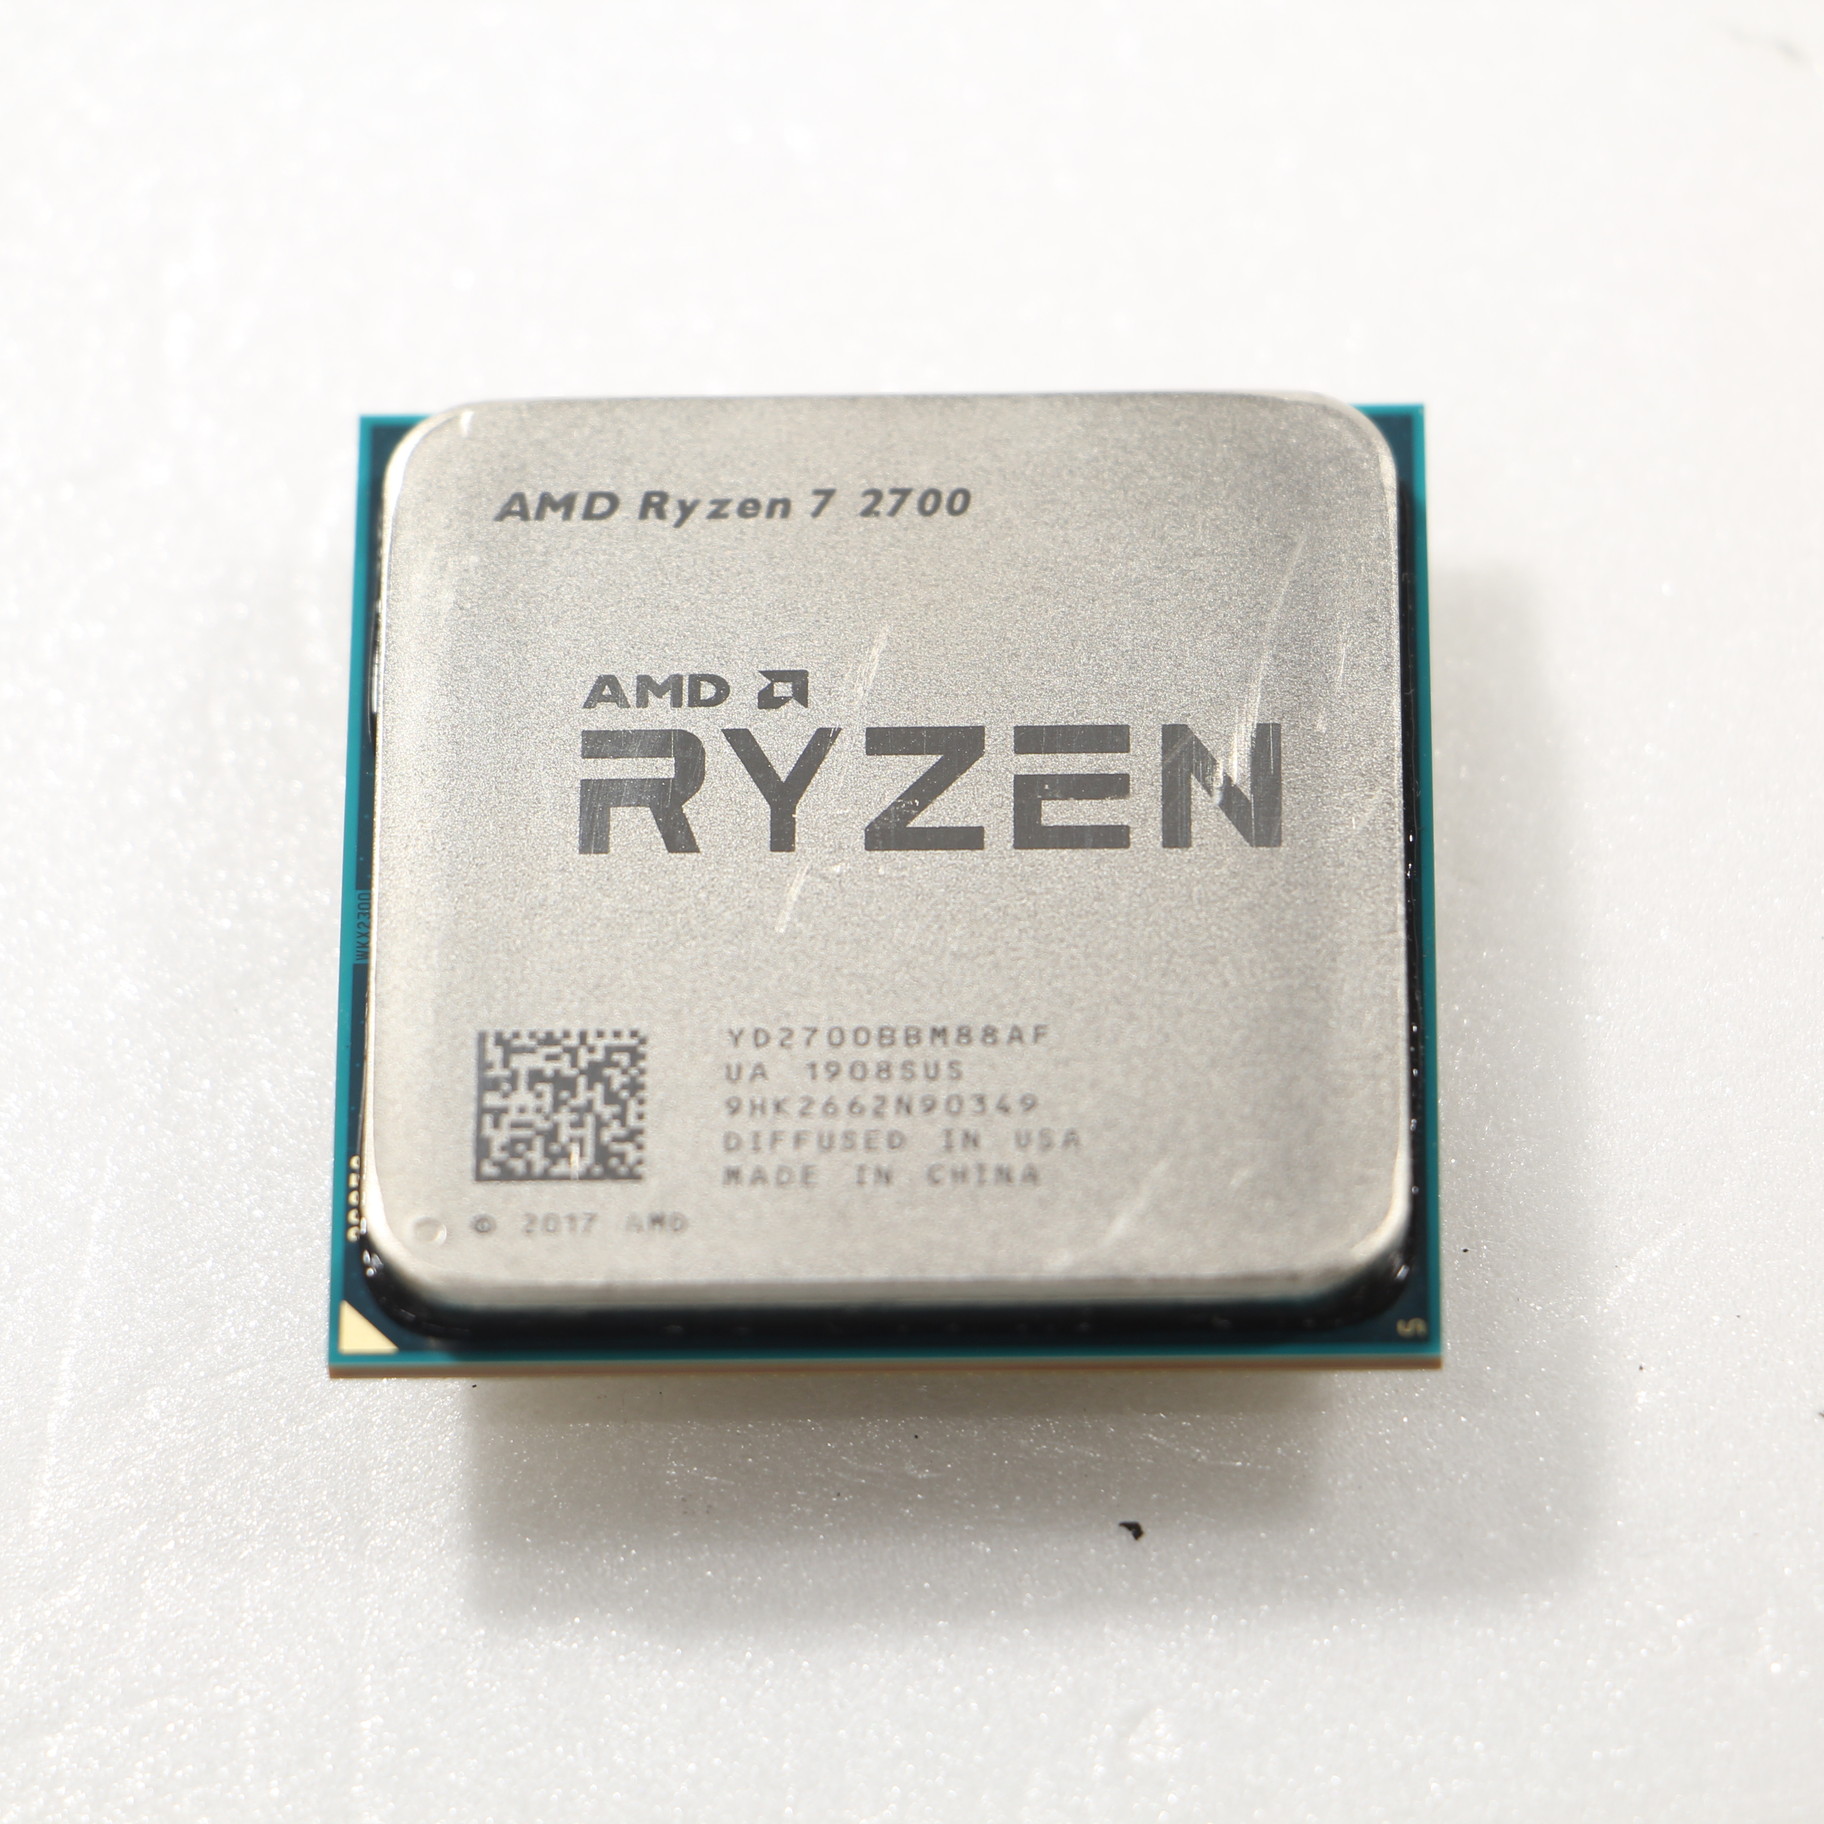 AMD Ryzen 7 2700 CPU Socket AM4